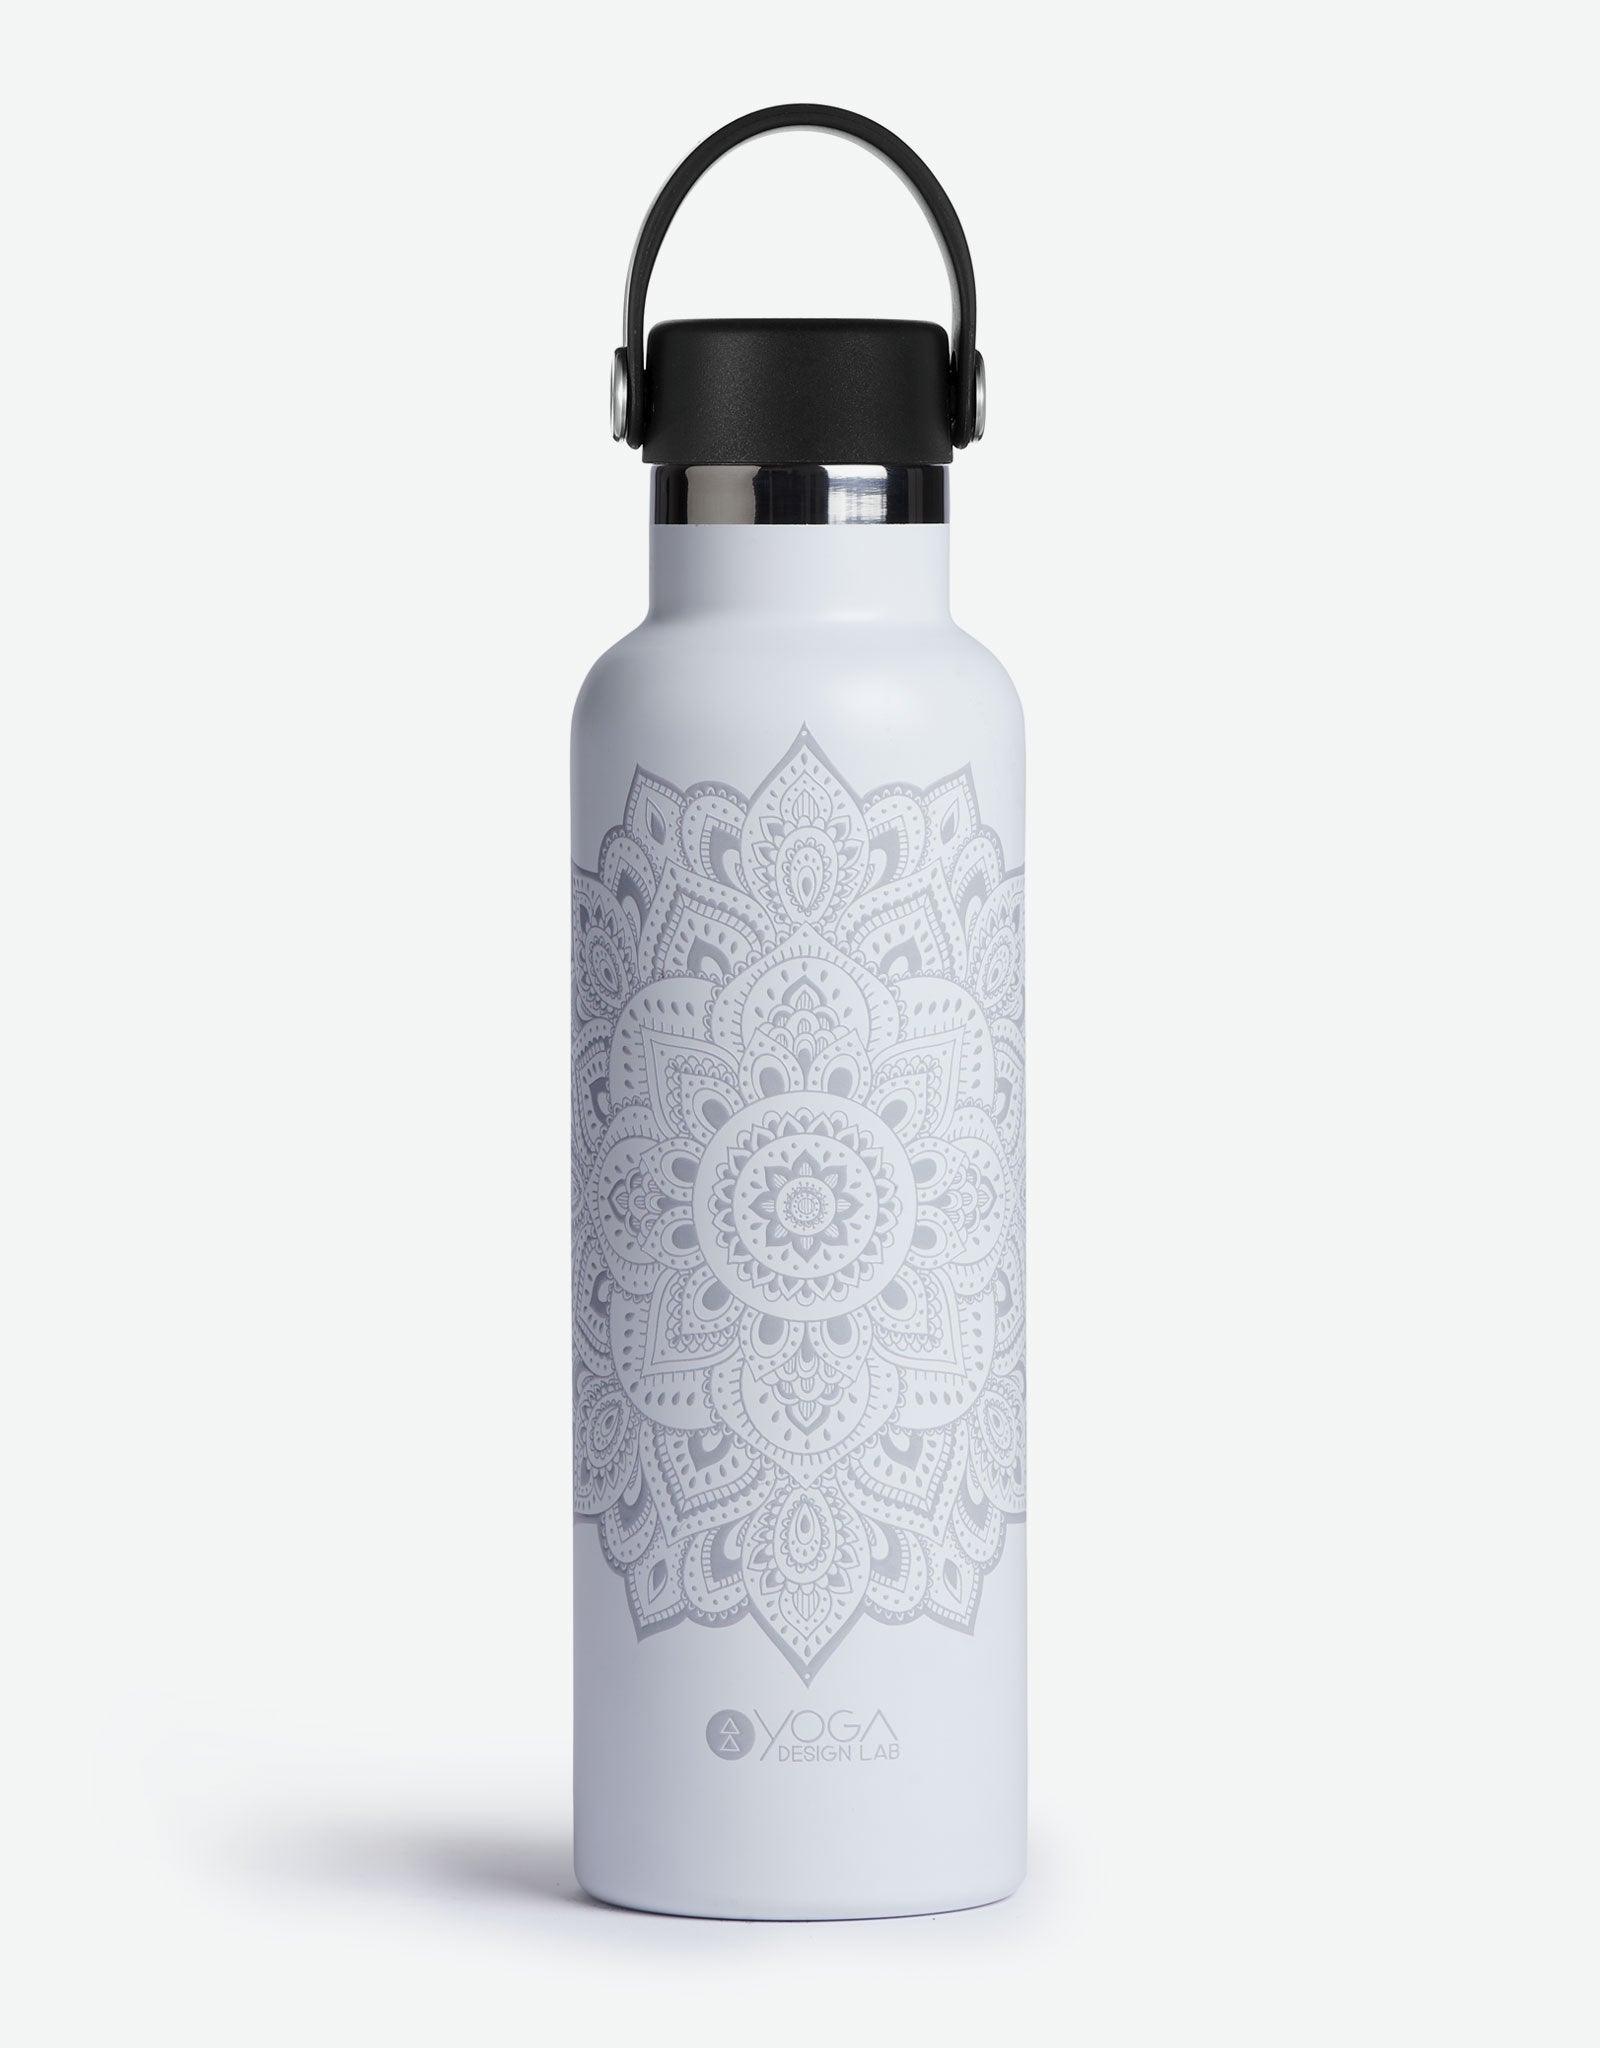 http://www.yogadesignlab.com/cdn/shop/files/yoga-water-bottle-mandala-white-insulated-water-bottle-and-stainless-steel-bottles-yoga-design-lab-1.jpg?v=1686372249